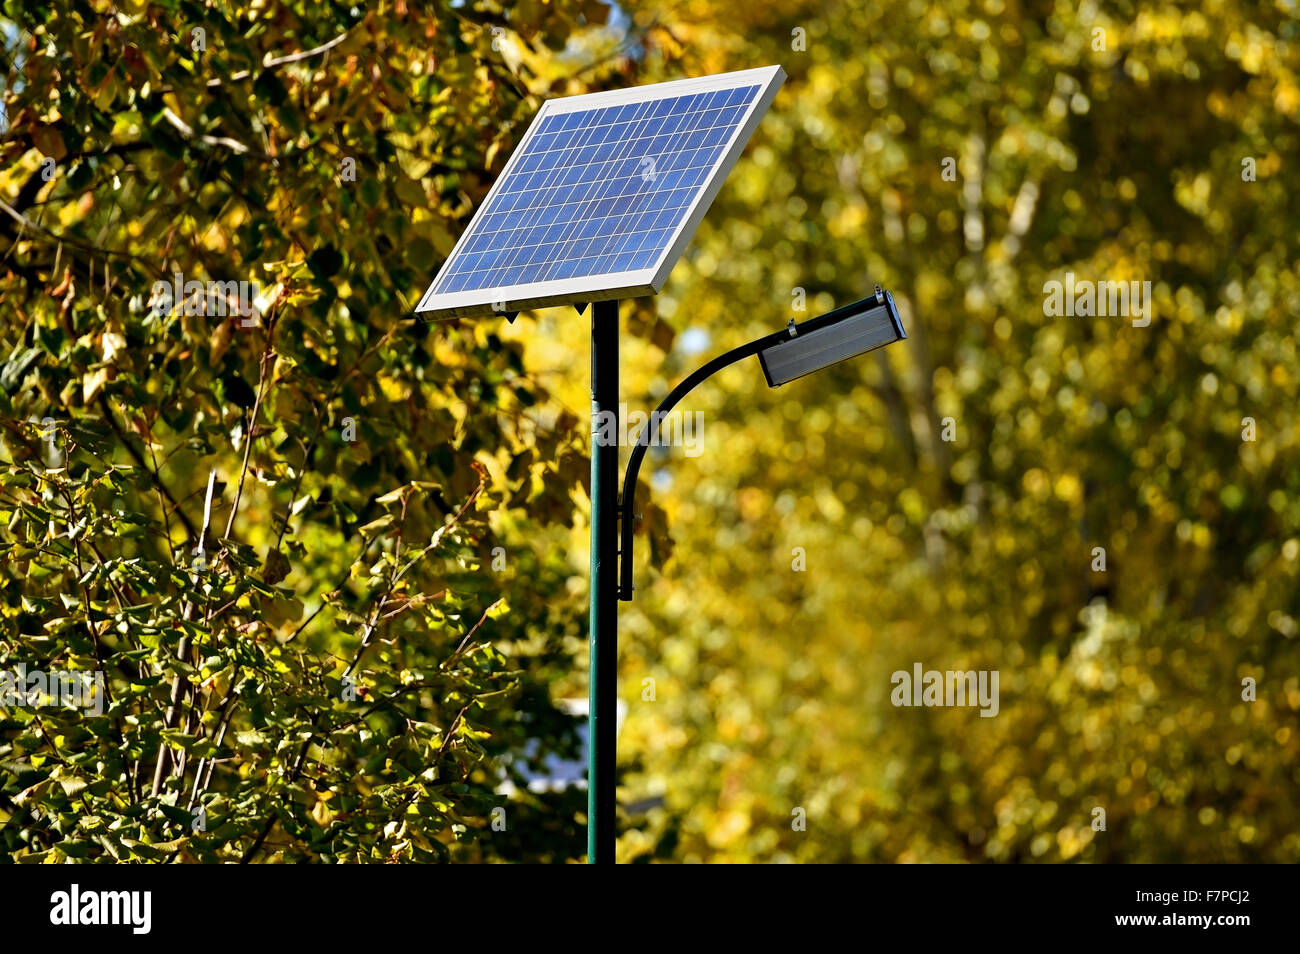 Détail d'un lampadaire solaire dans un parc en automne Banque D'Images